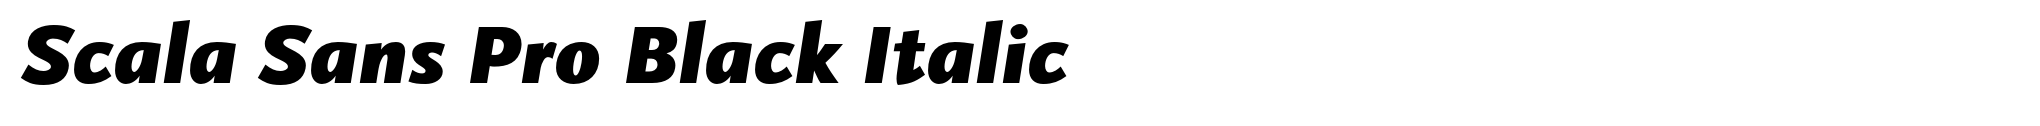 Scala Sans Pro Black Italic image